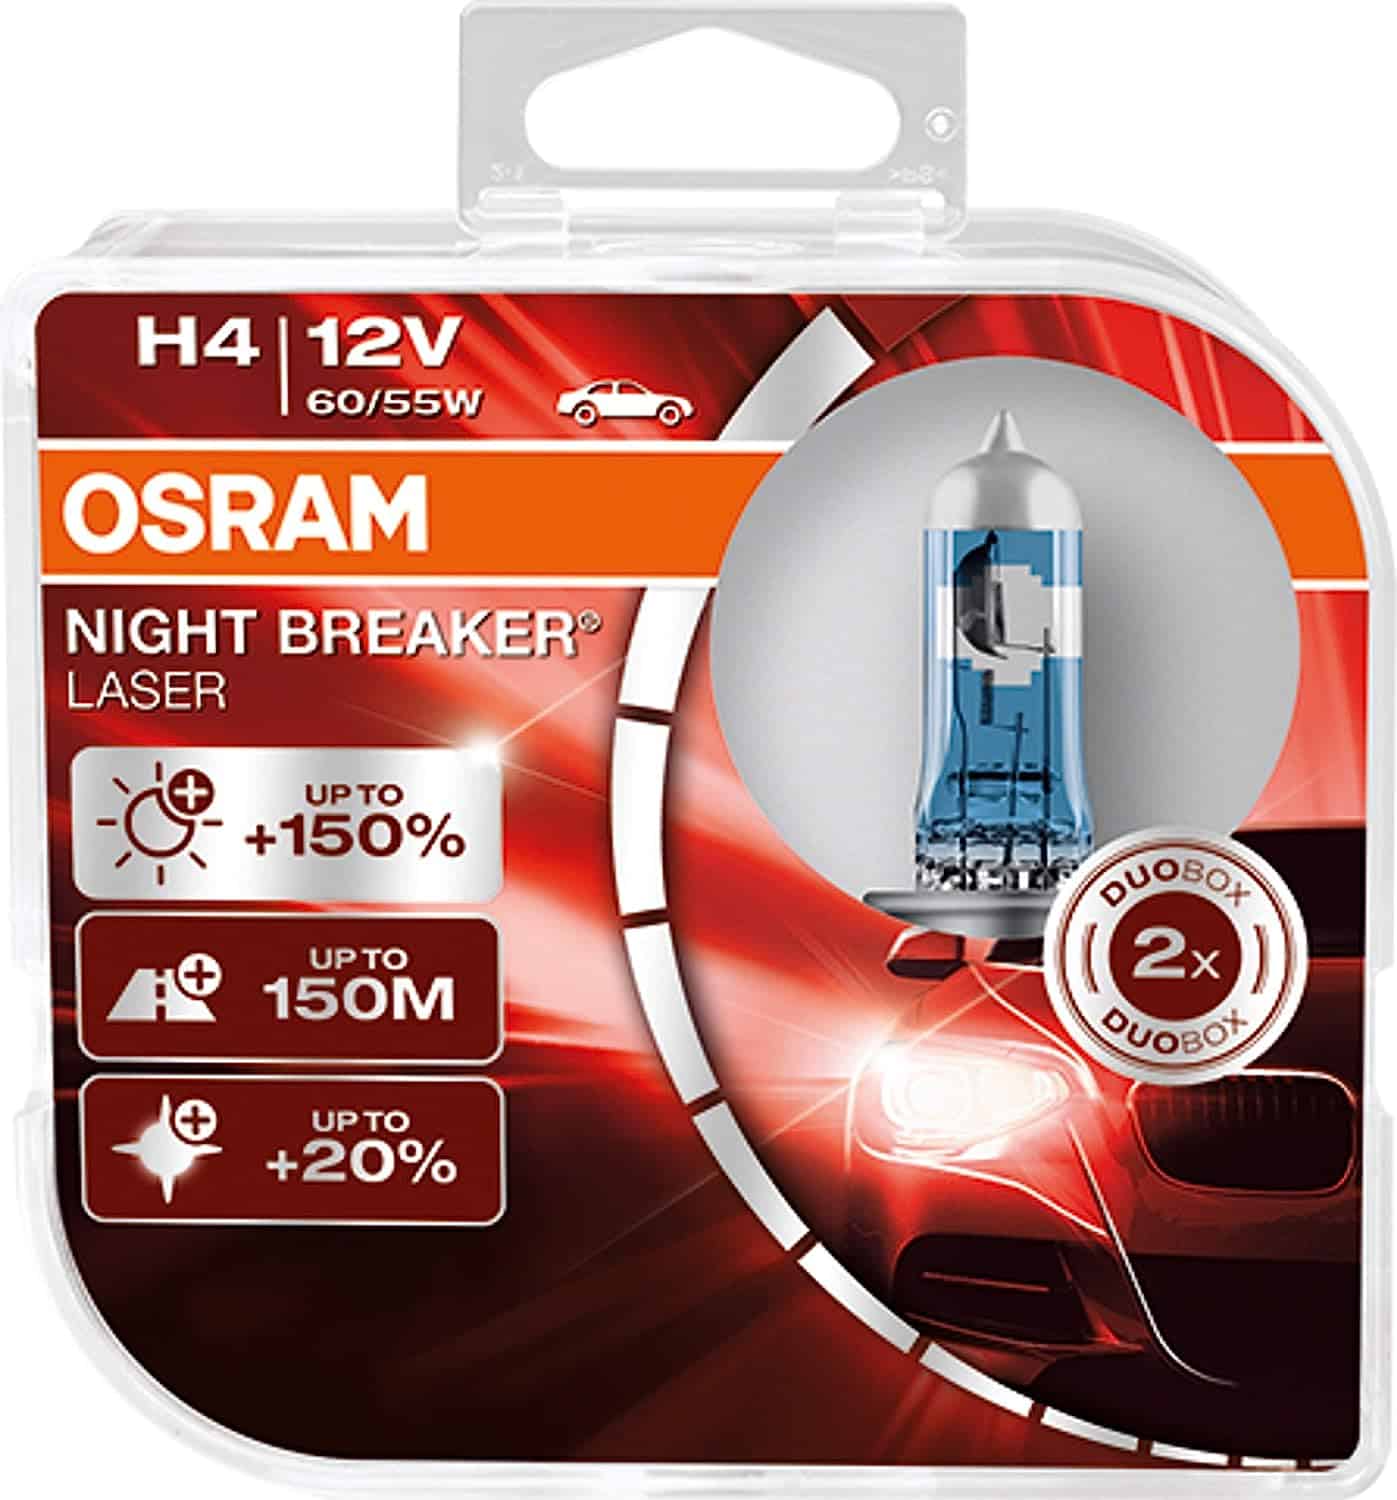 OSRAM NIGHT BREAKER LASER H4, +150% more brightness, halogen headlight lamp-1361